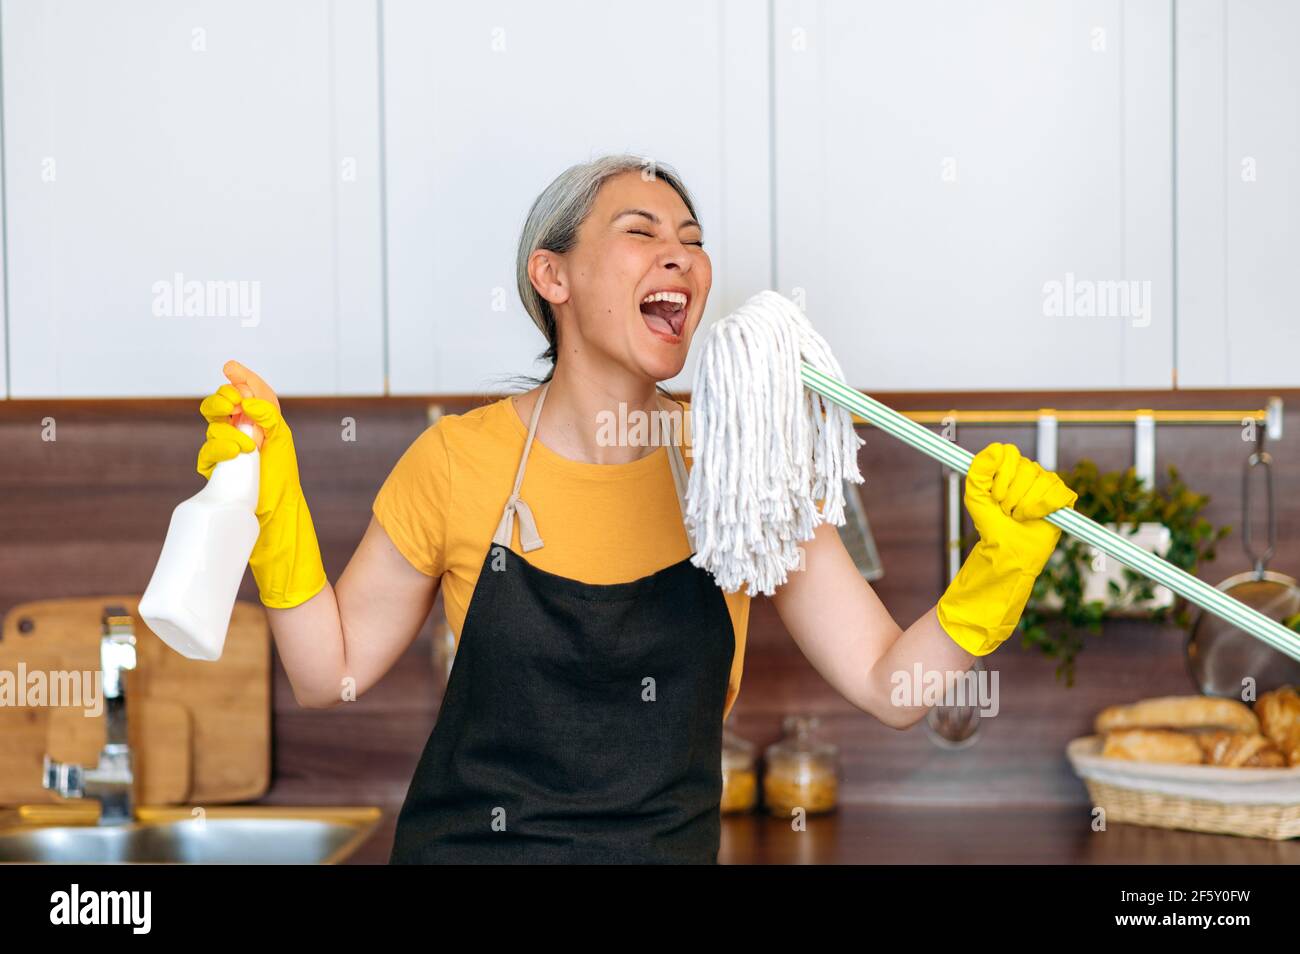 Felice divertente lavorante duro maturo grigio-capelli asiatico operaio di pulizia femminile o casalinga in guanti e grembiule, prendendo una pausa, ballando in cucina con detergente e mop, cantando la sua canzone preferita Foto Stock